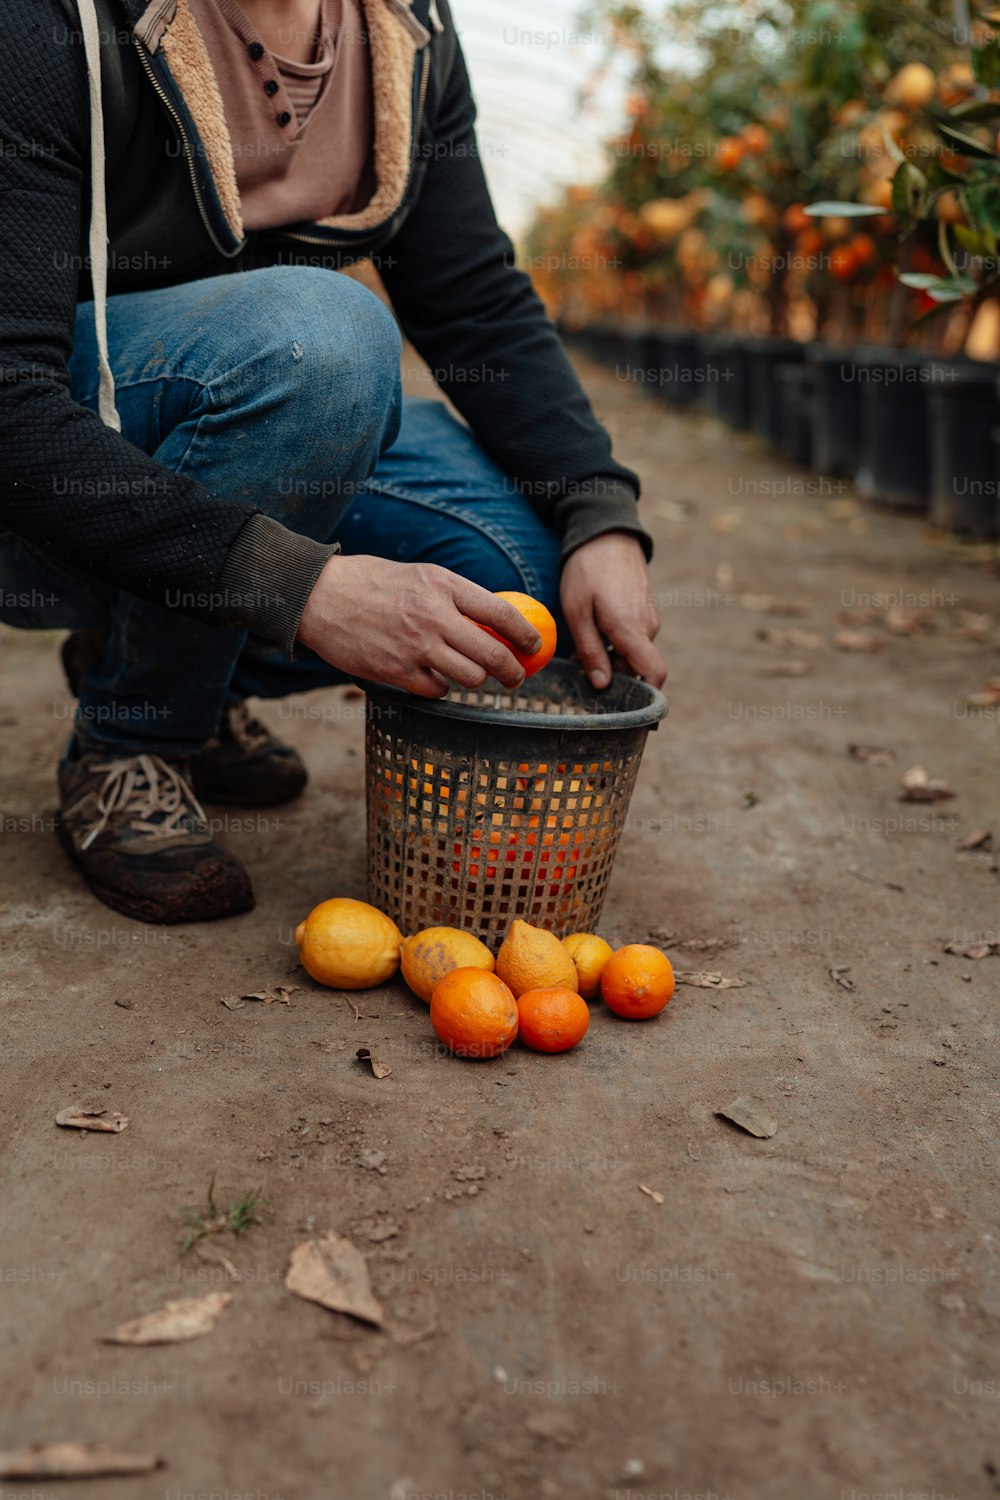 une personne agenouillée cueillant des oranges dans un panier